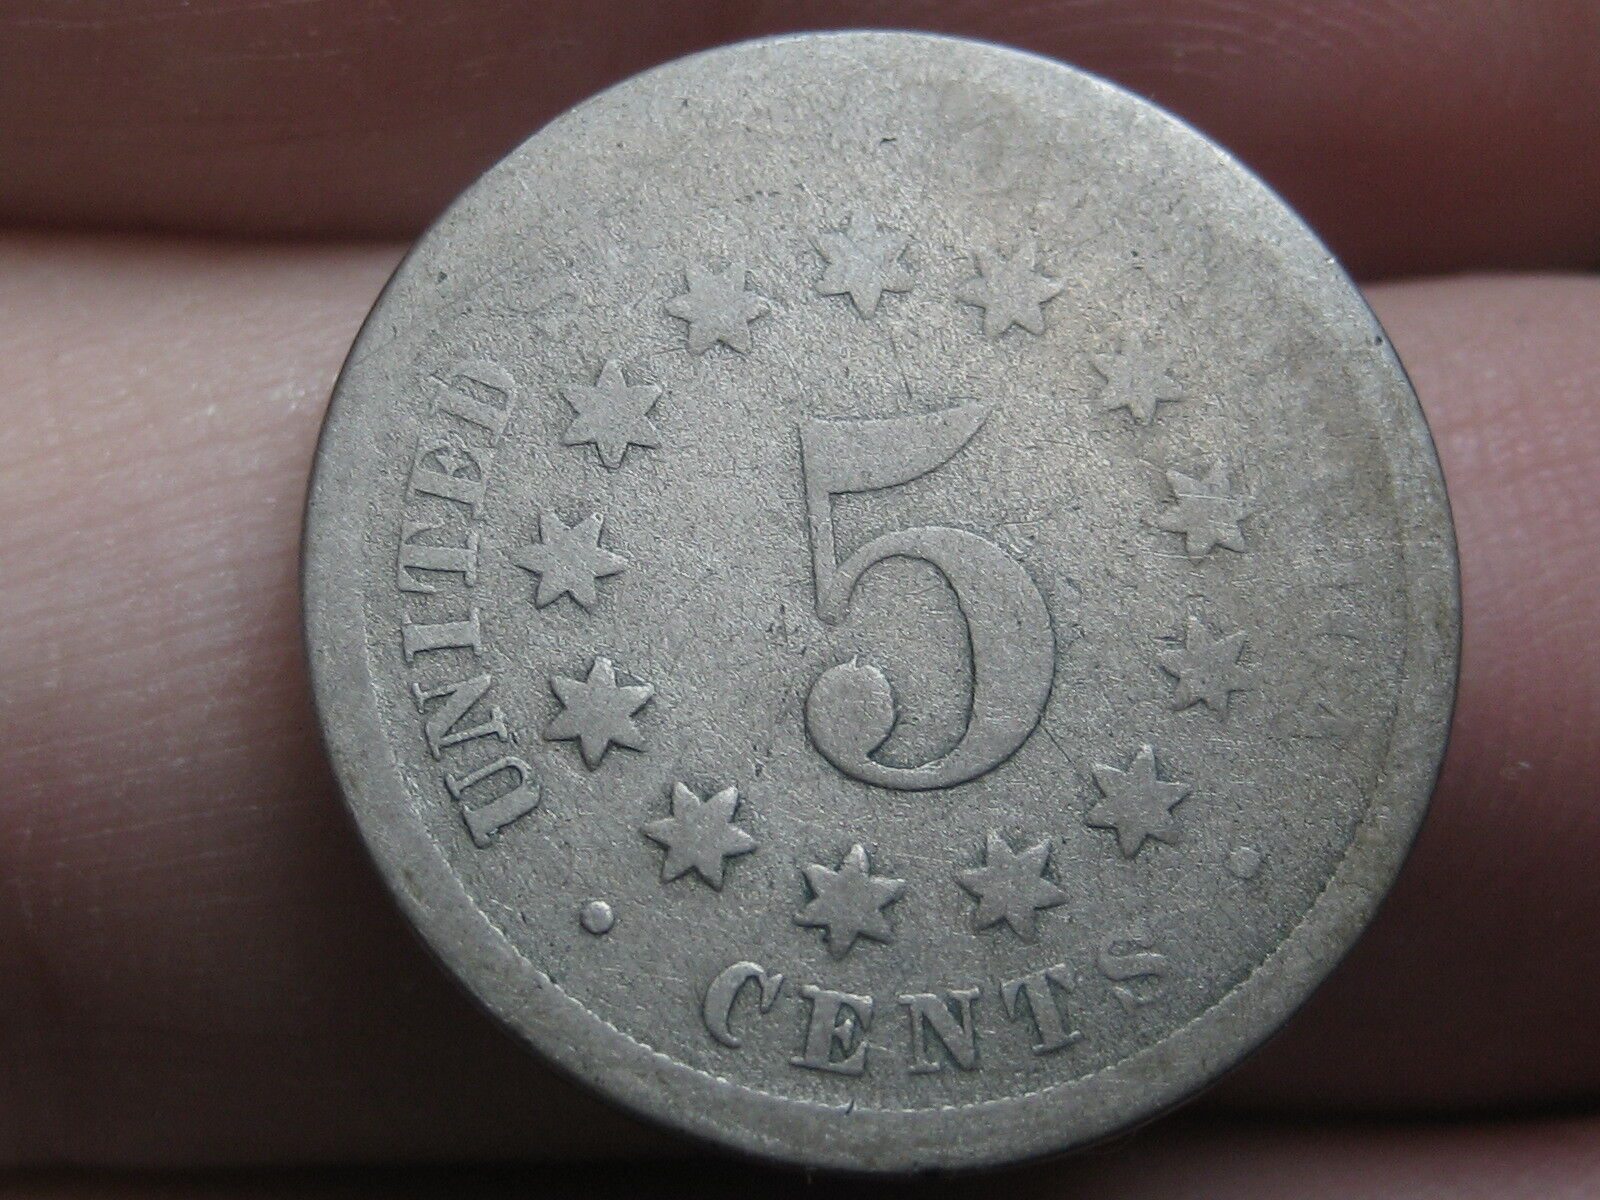 1868 Shield Nickel 5 Cent Piece- Fs-901, Rev Of 1868, Broken Letter